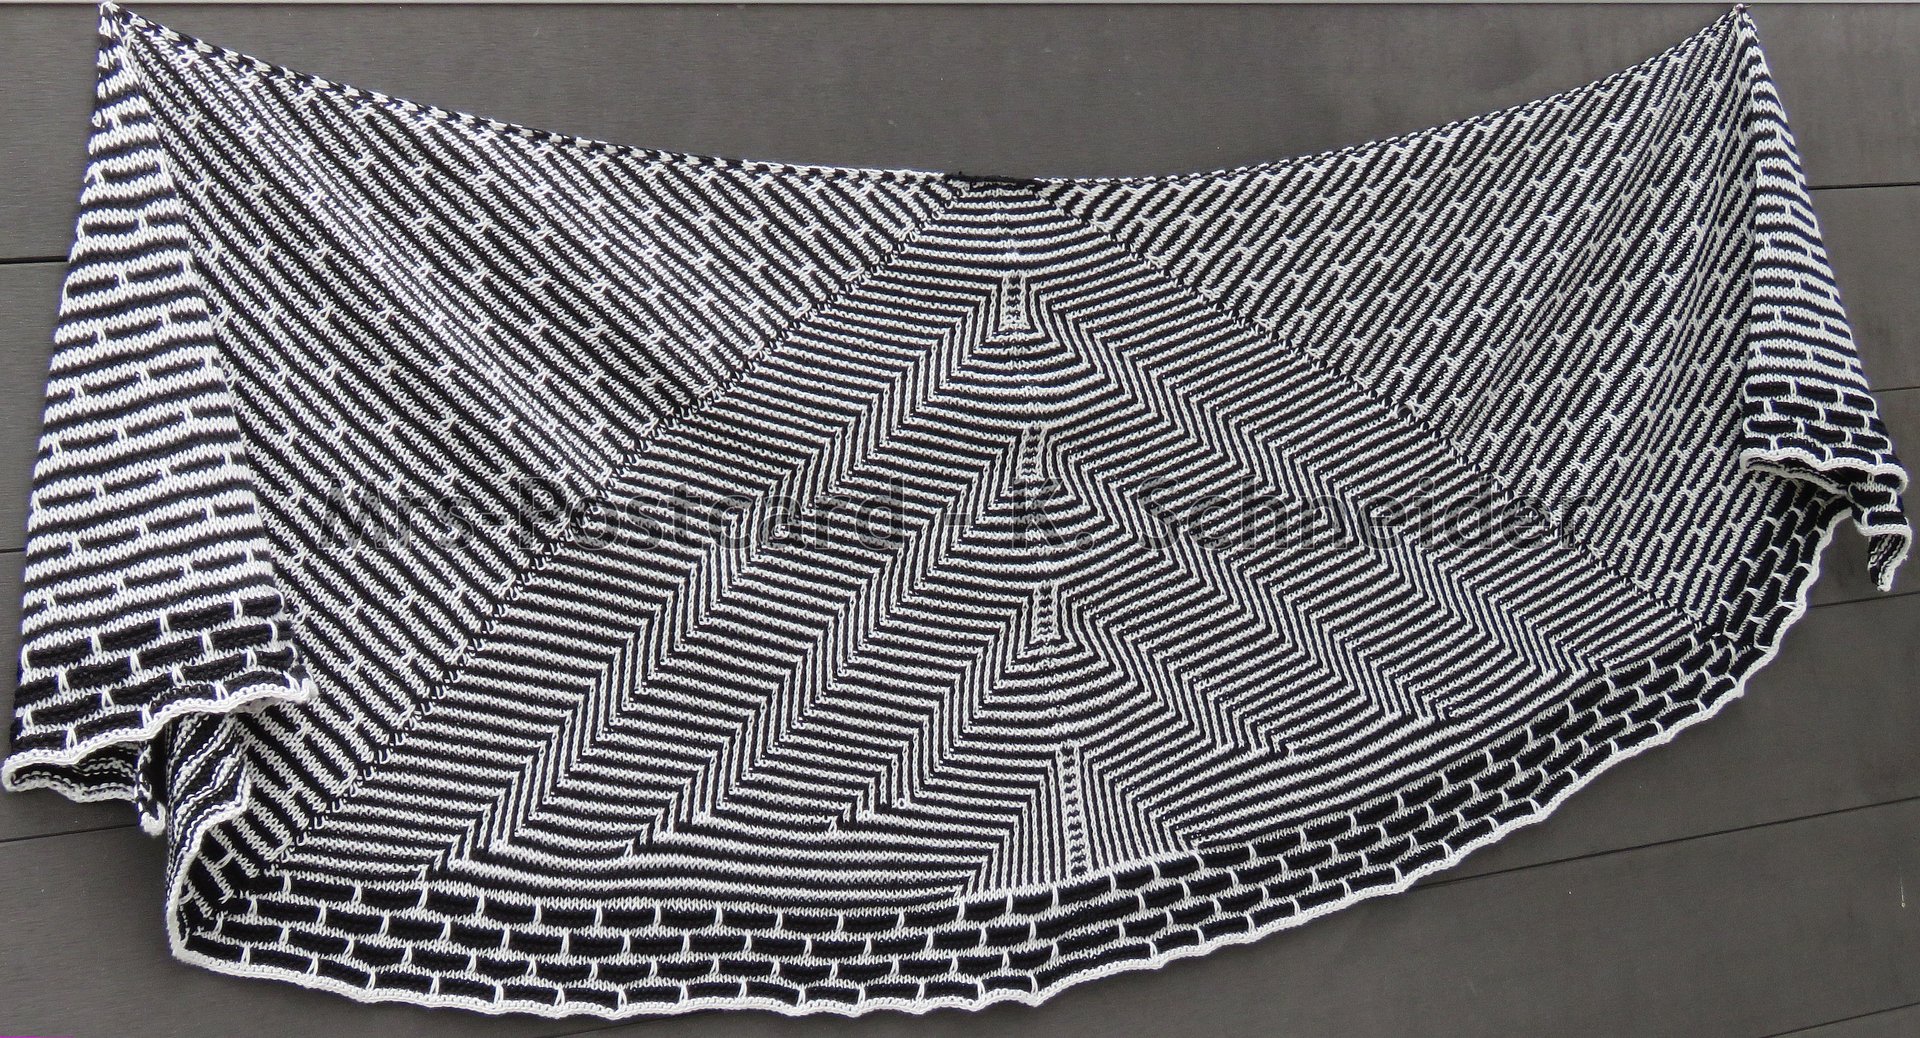 INSIDEOUT -  Anleitung für ein Tuch mit eindrucksvollem Muster in 2 Varianten